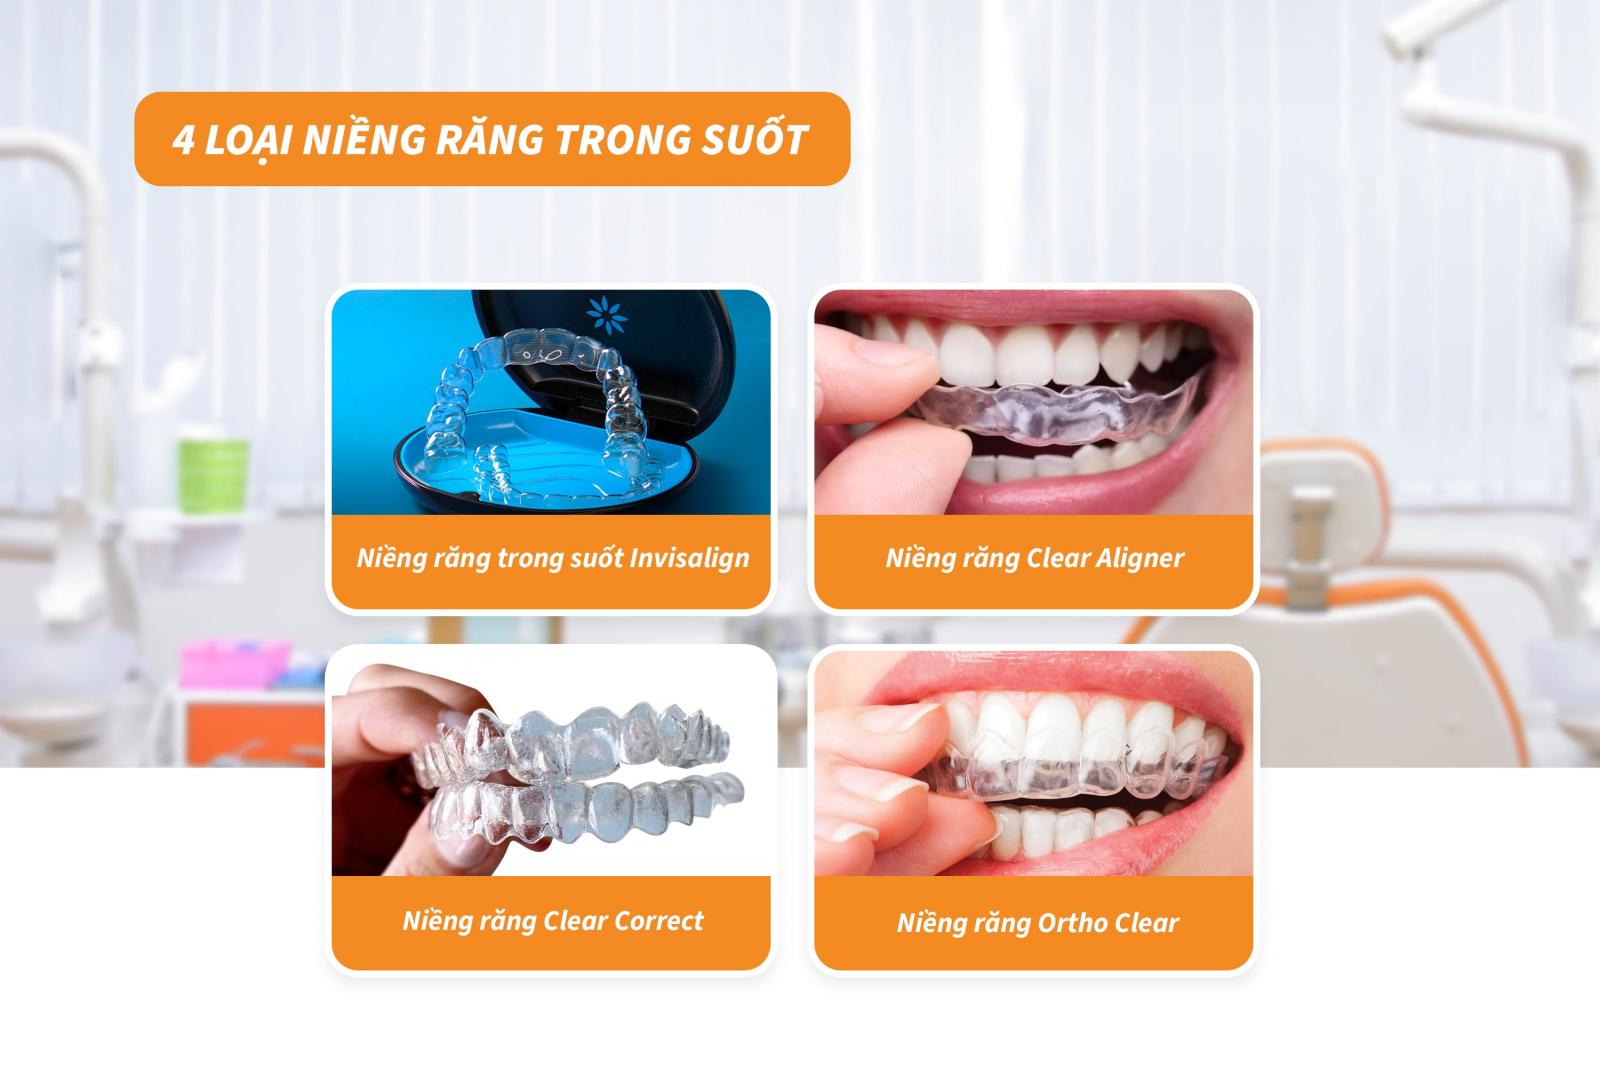 4 loại niềng răng trong suốt phổ biến hiện nay